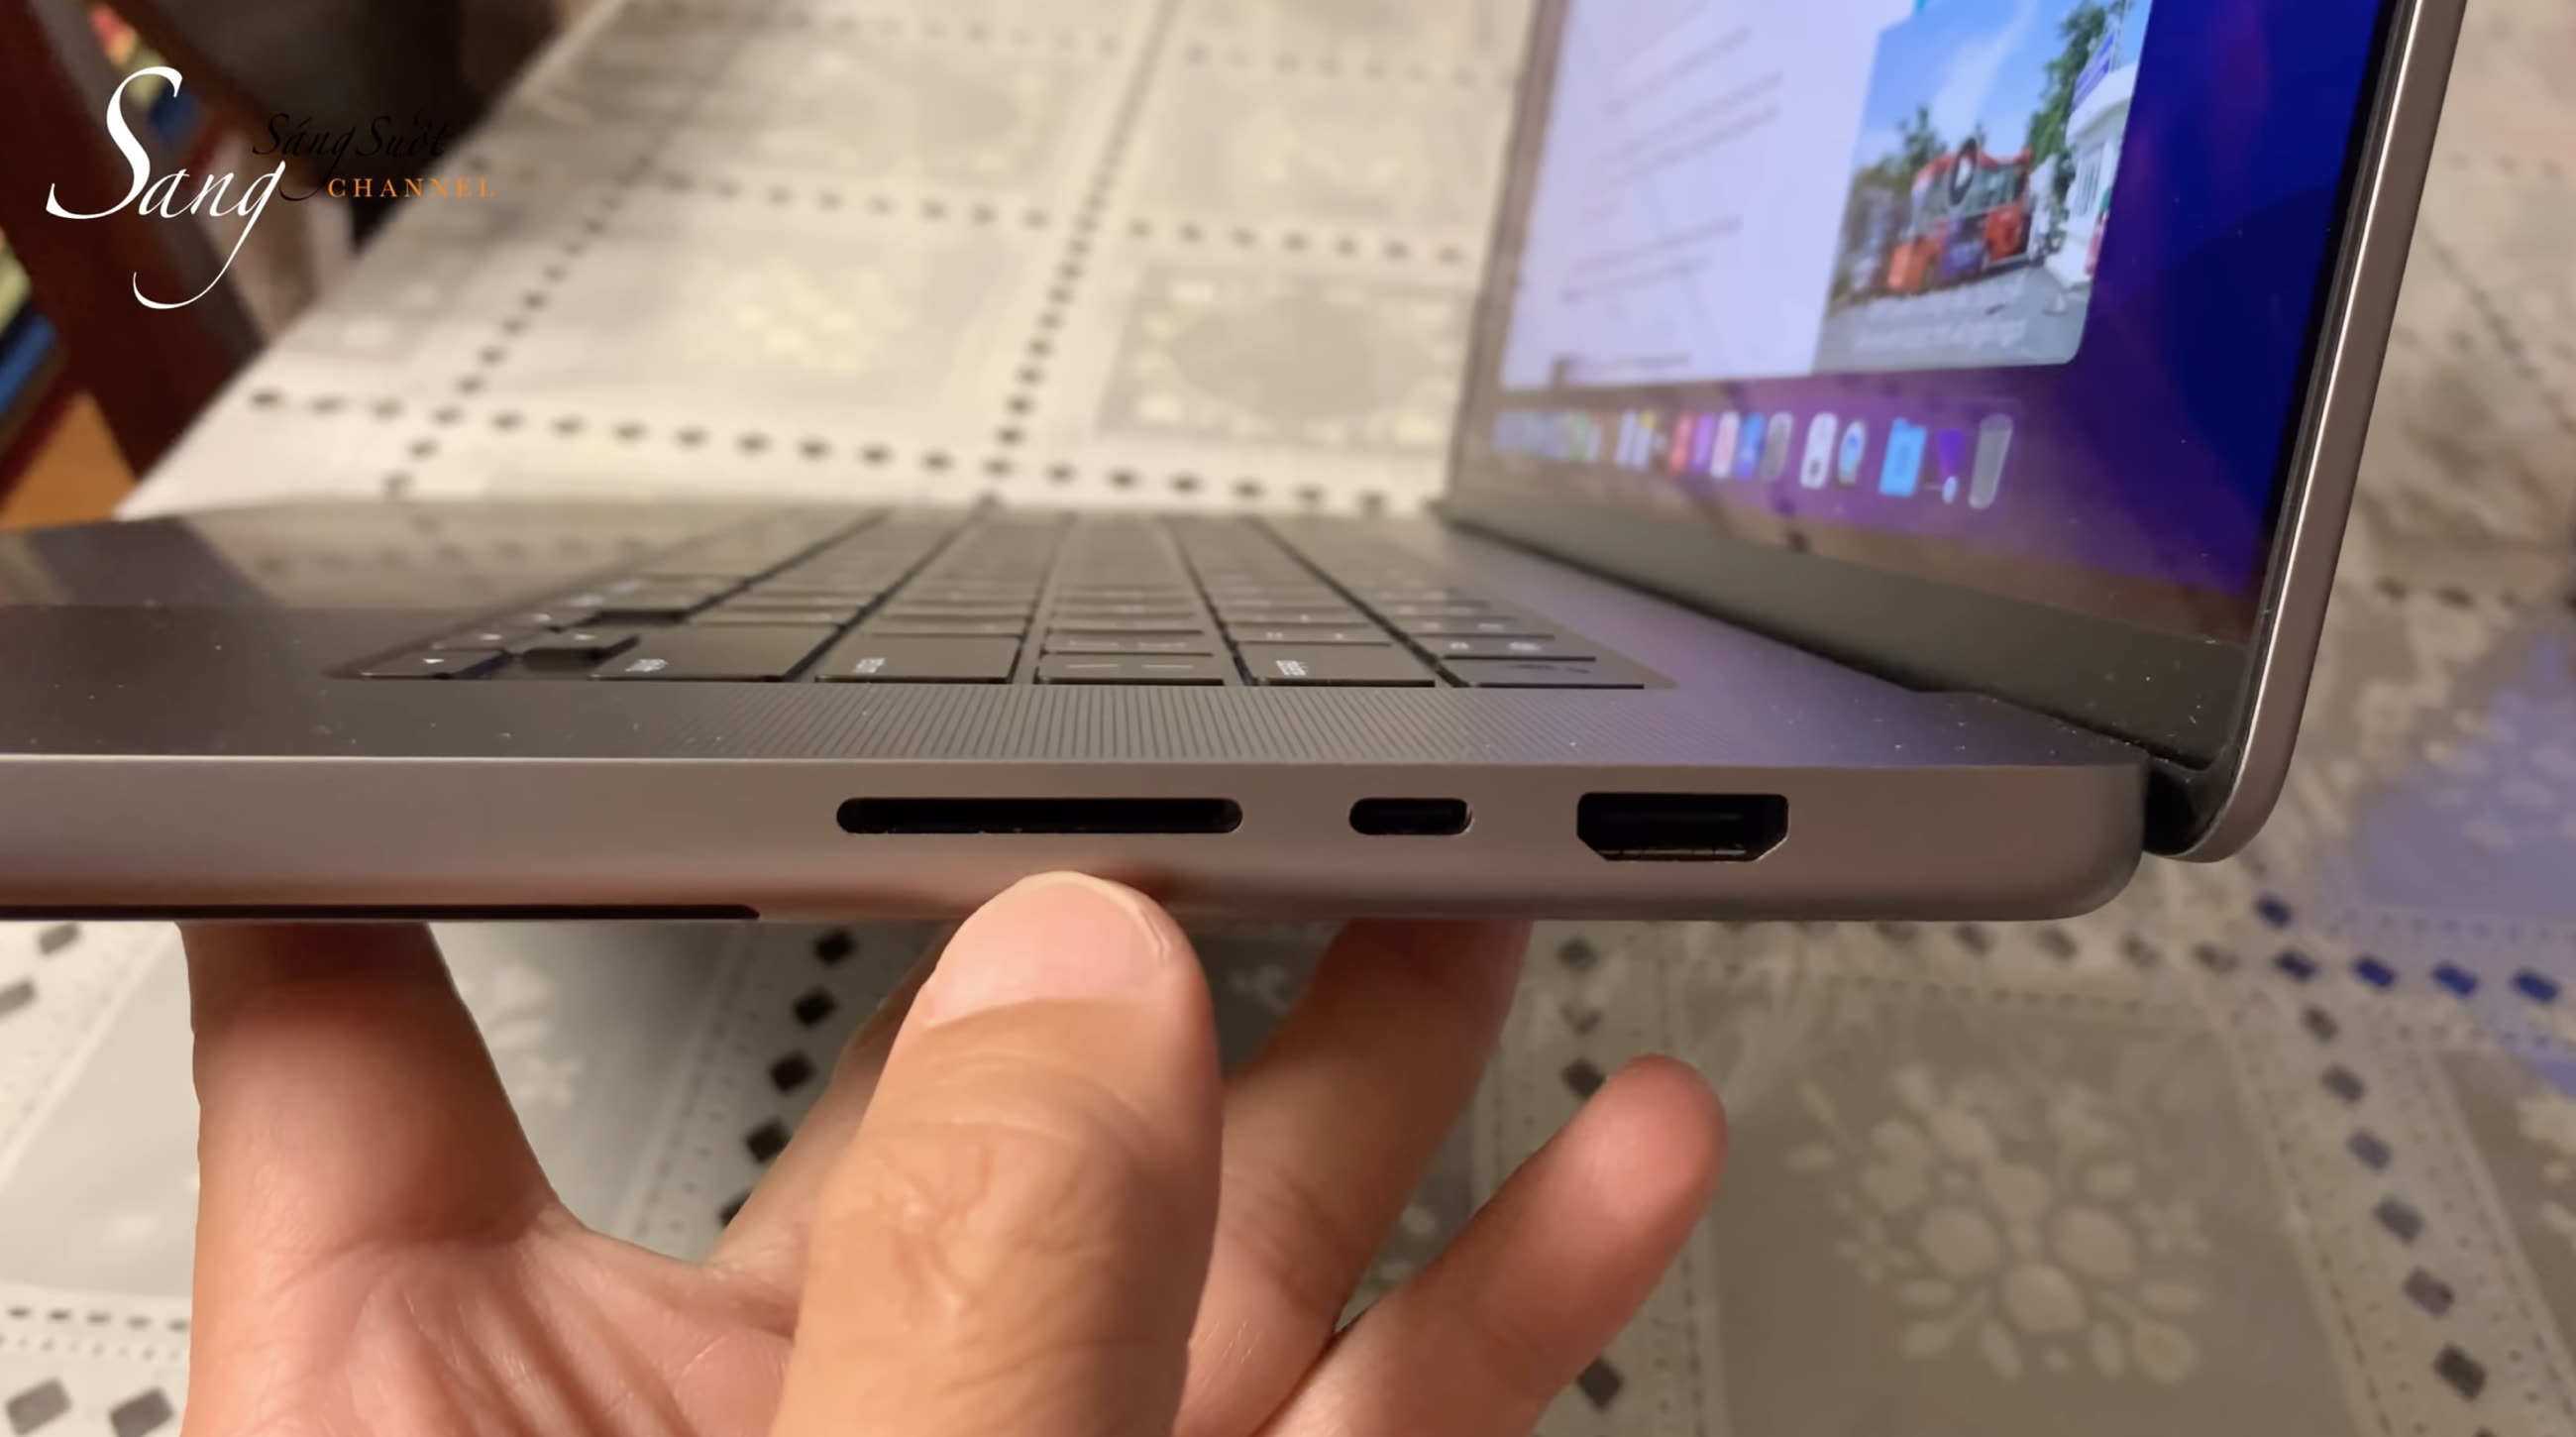 Le MacBook Pro 16 a une arme secrète que le modèle 14 pouces n'a pas